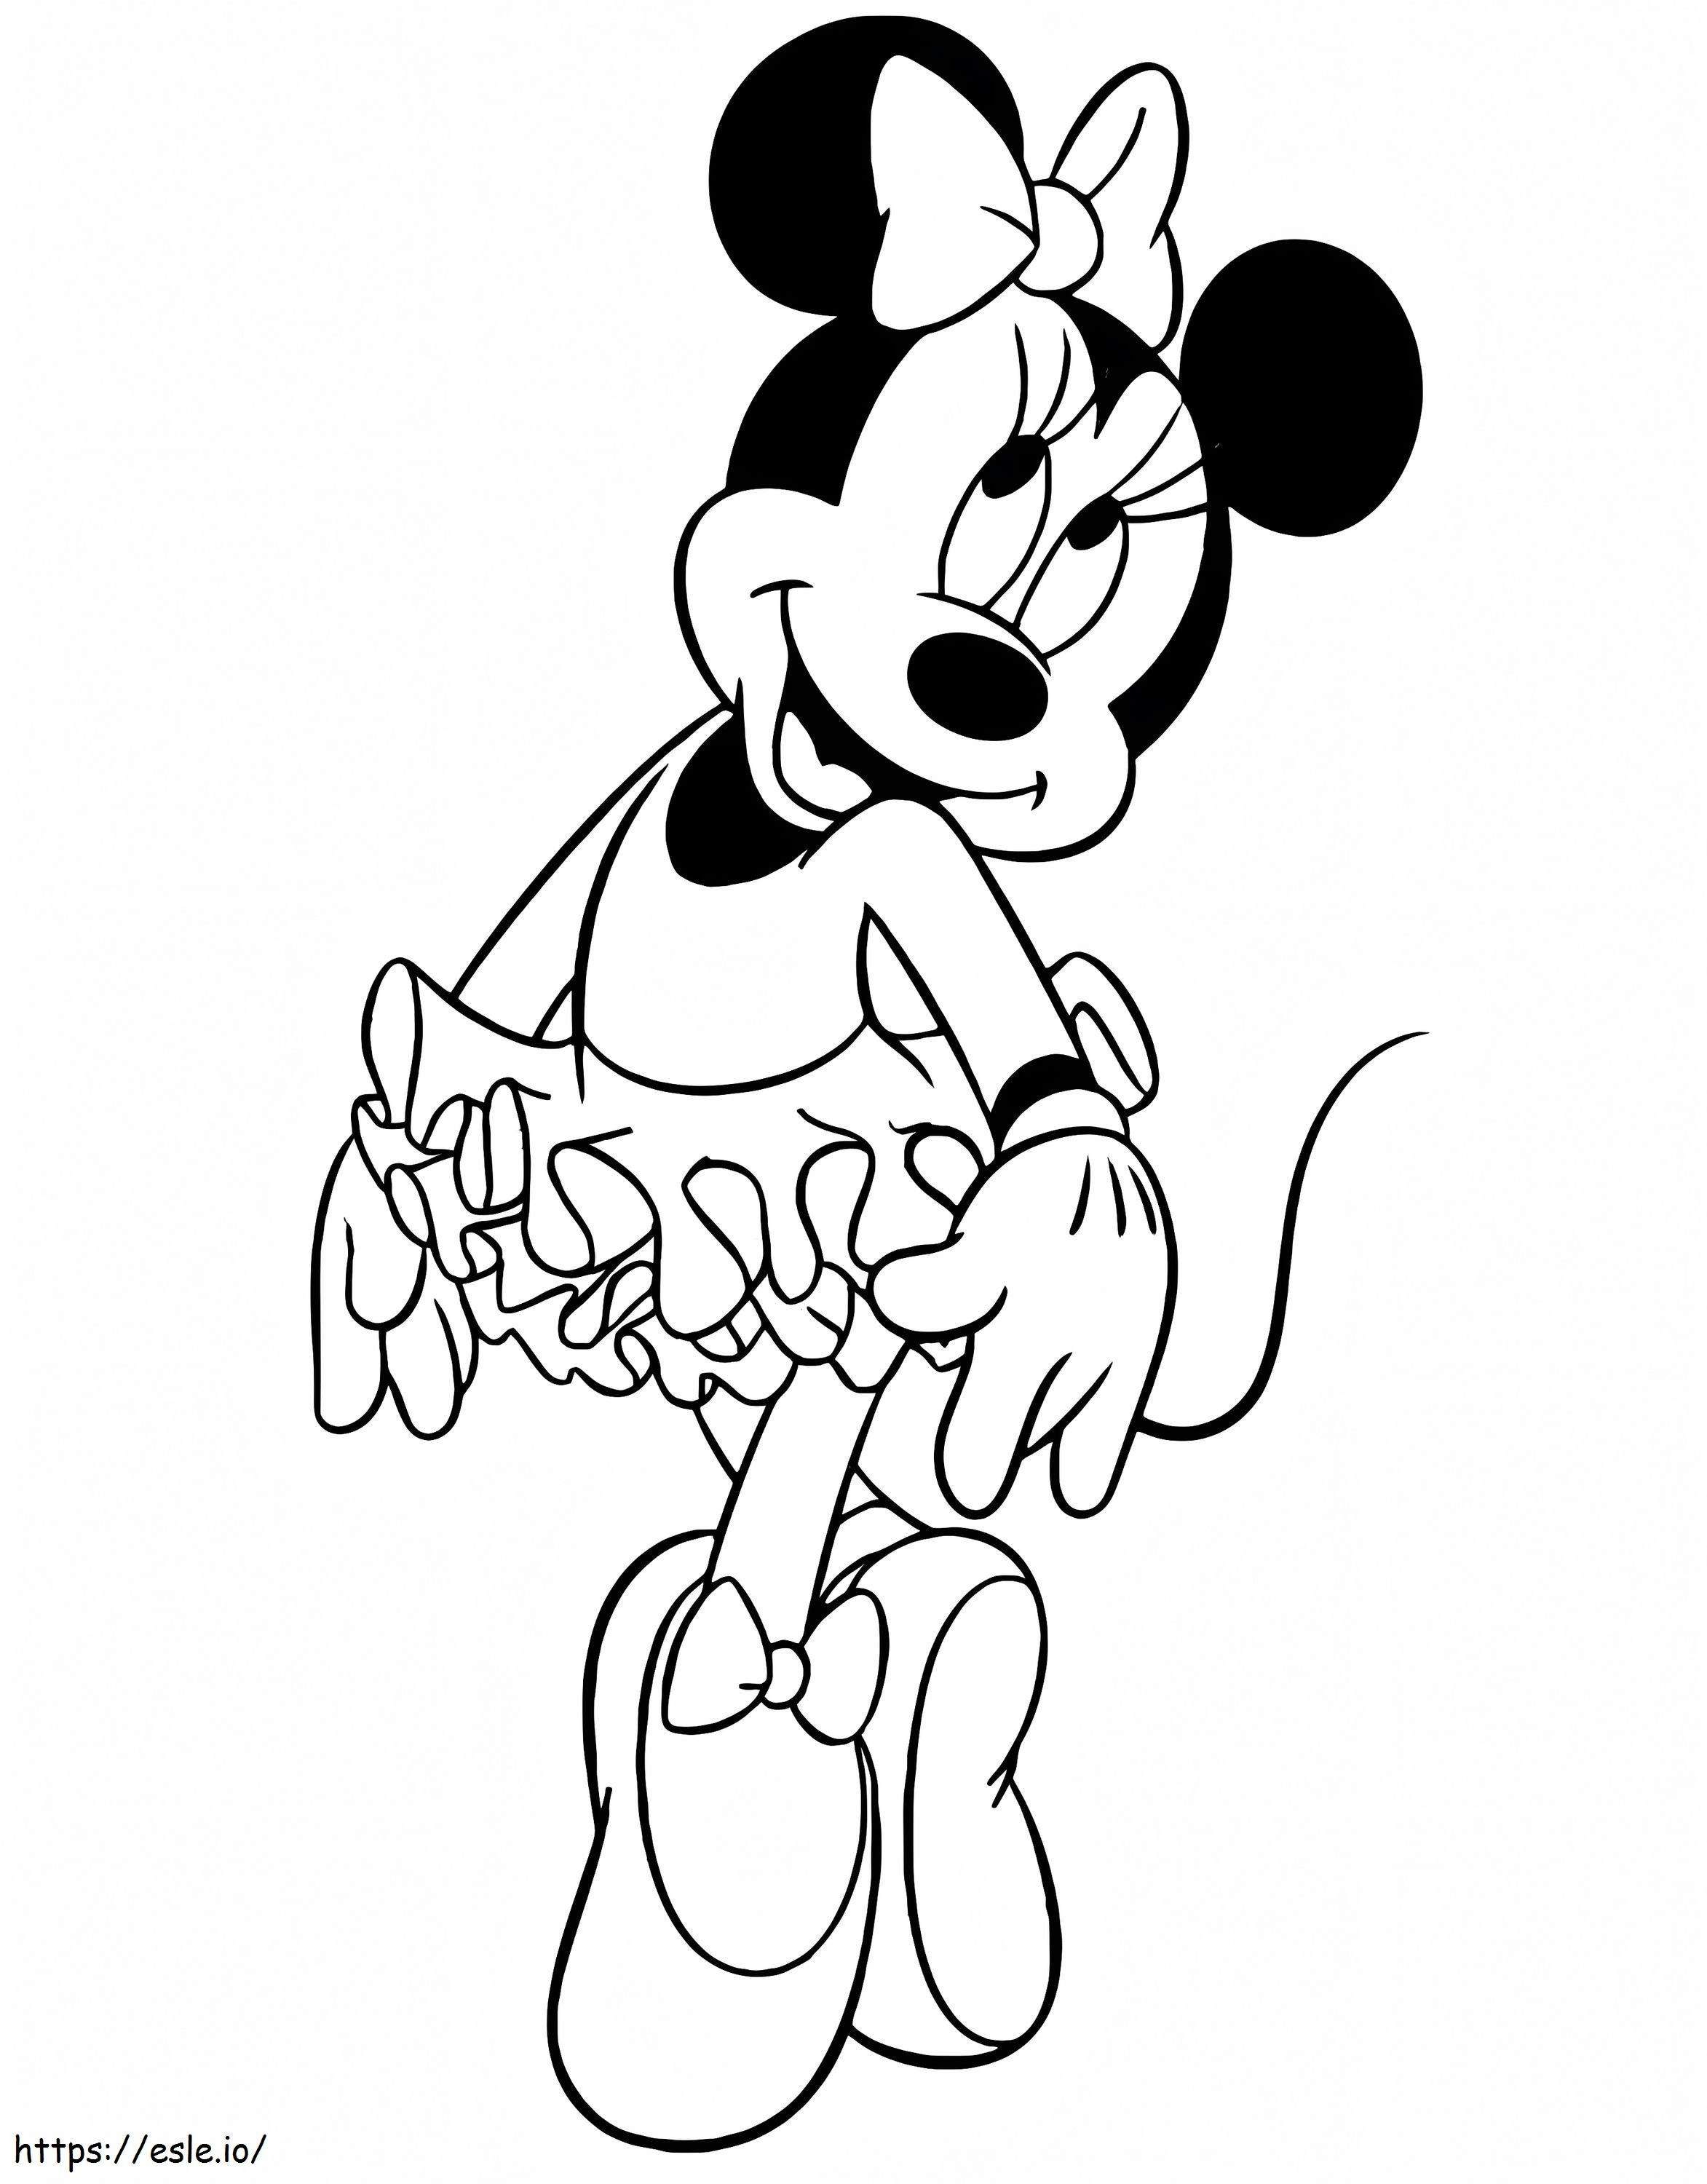 Coloriage Ballet Minnie Mouse à imprimer dessin